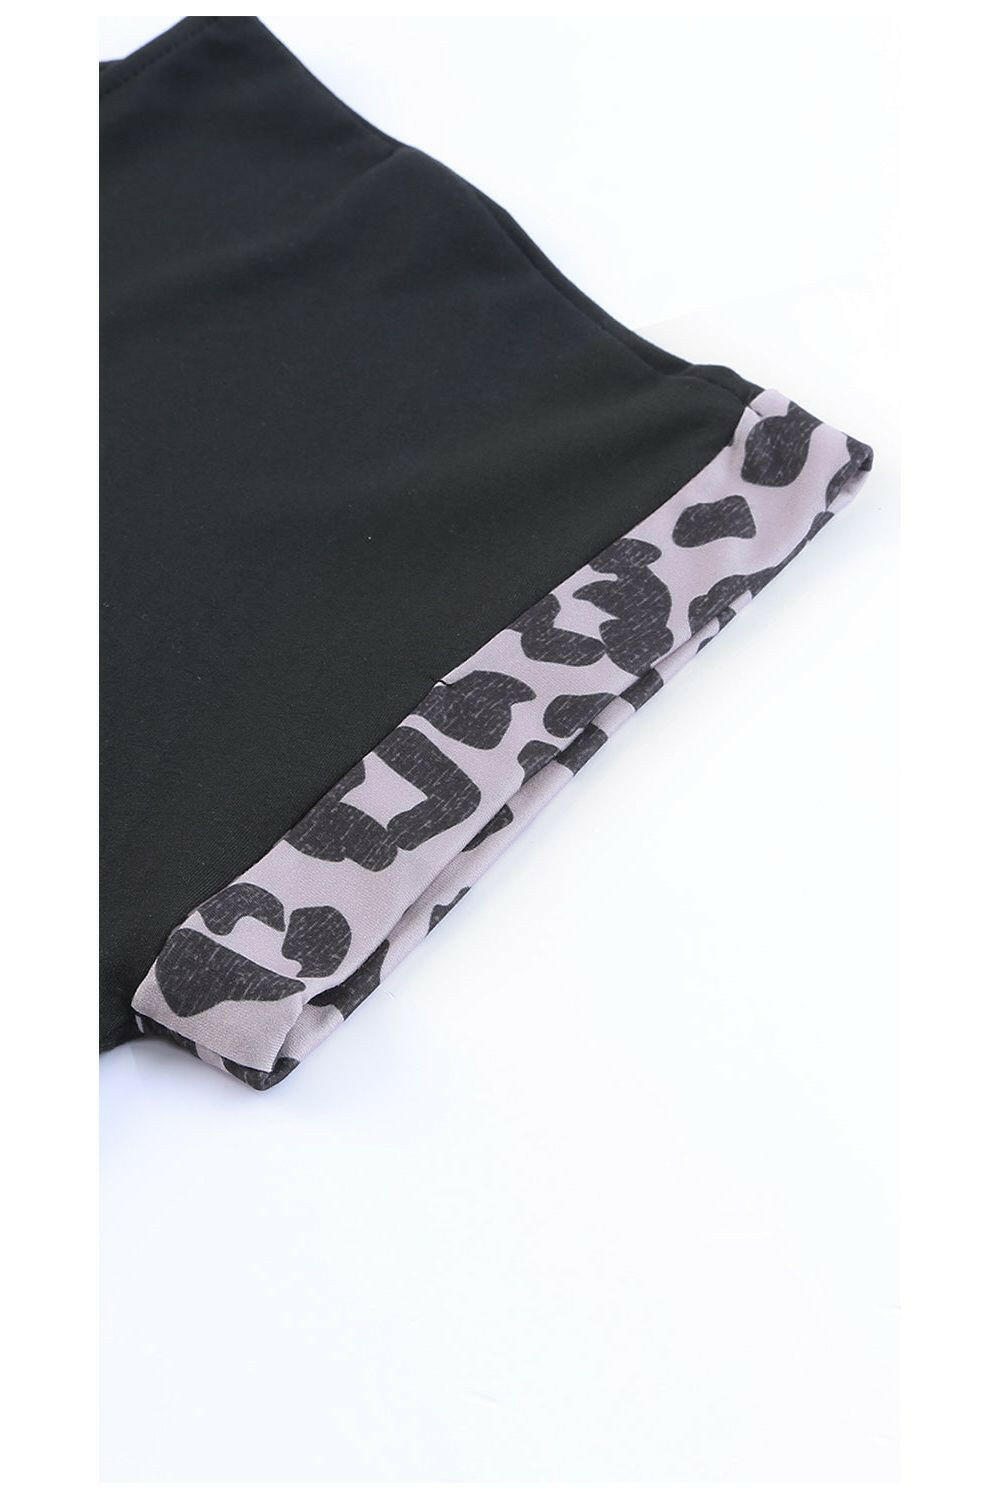 Leopard Color Block Split Dress - By Baano